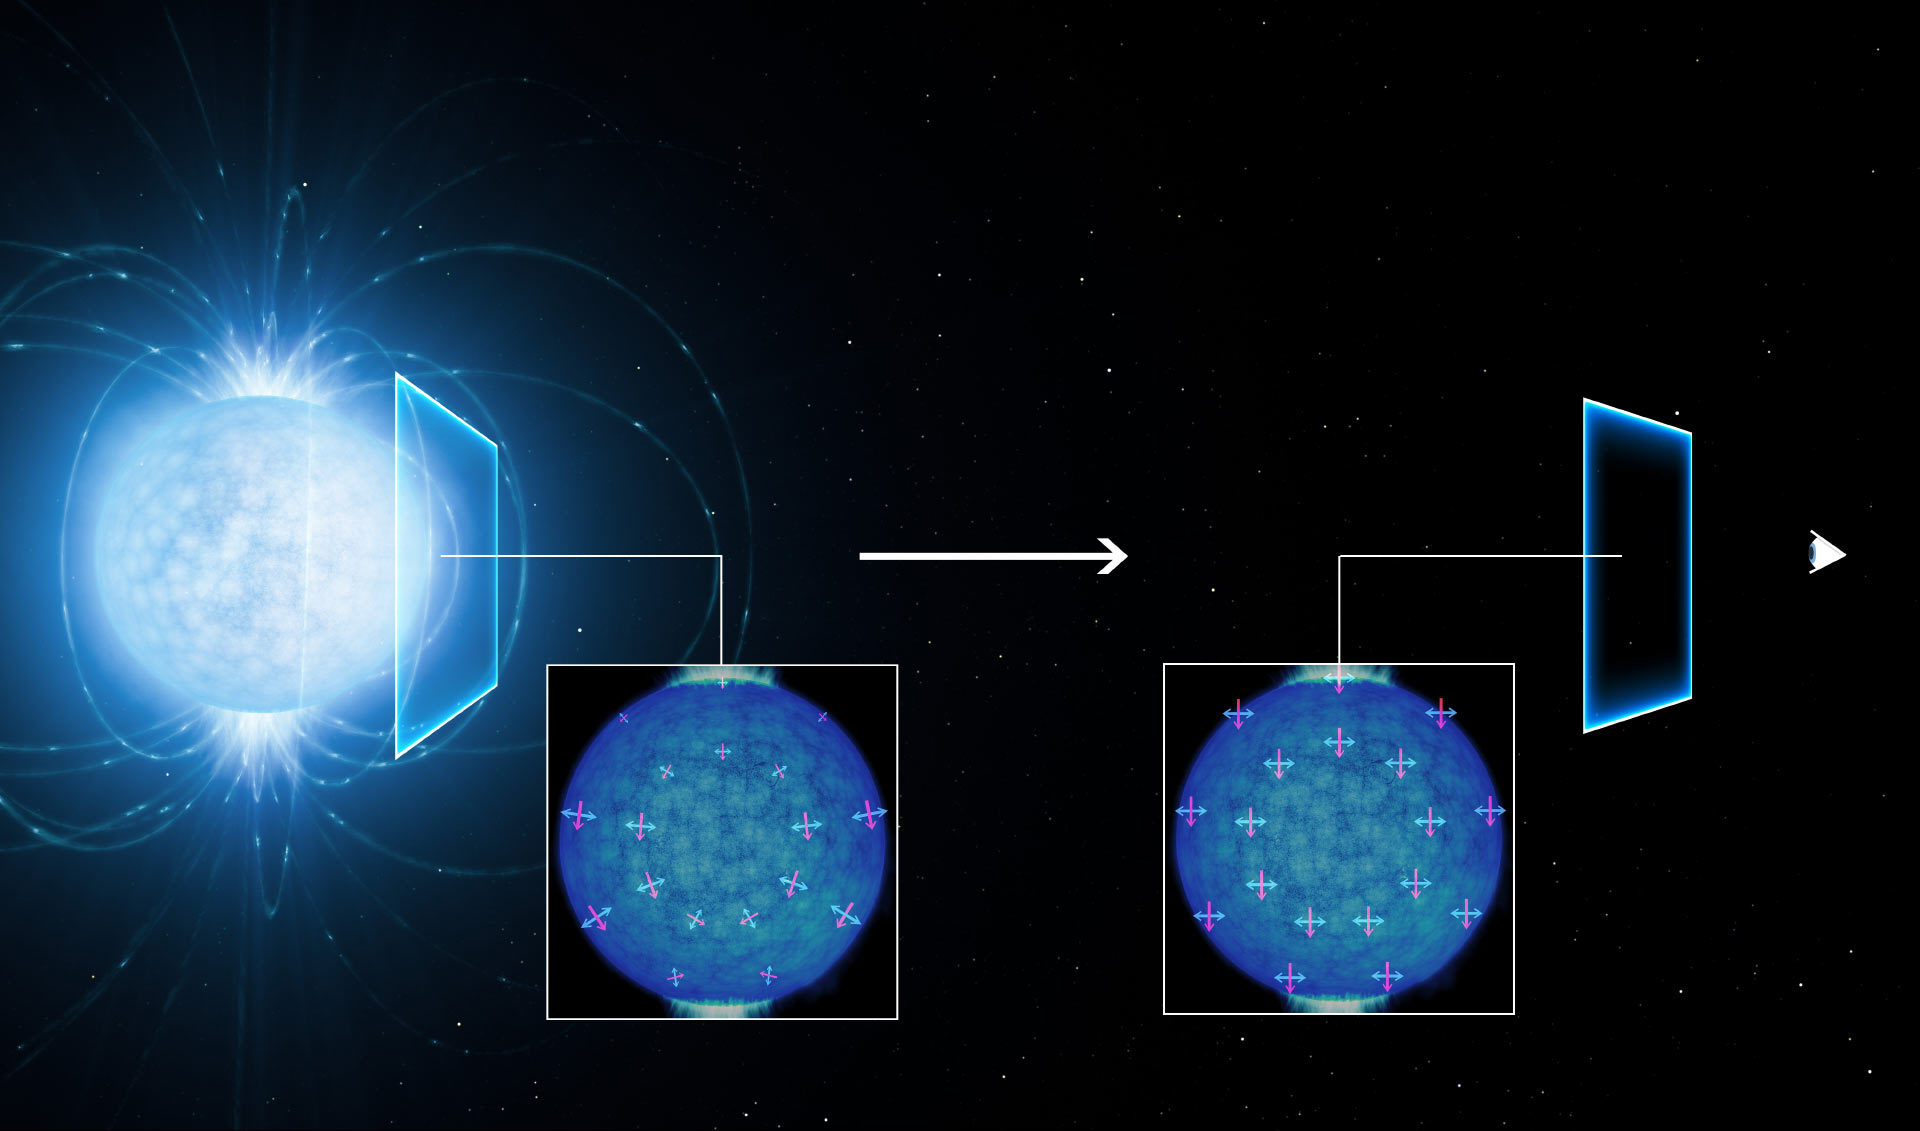 Niezwykłe właściwości ekstremalnych pól magnetycznych. Wizja artystyczna zjawiska dwójłomności próżni, które zostało zaobserwowane najprawdopodobniej w promieniowaniu elektromagnetycznym gwiazdy neutronowej RX J1856.5-3754 (patrz również materiał na portalu Urania). Światło emitowane przez gwiazdę neutronową (po lewej) staje się liniowo spolaryzowane, gdy podróżuje w próżni niedaleko gwiazdy neutronowej w swej drodze do obserwatora na Ziemi (po prawej). Kierunki pól magnetycznych i elektrycznych dla promieniowania elektromagnetycznego zostały pokazane odpowiednio linią czerwoną i niebieską. Źródło: L. Calçada / ESO